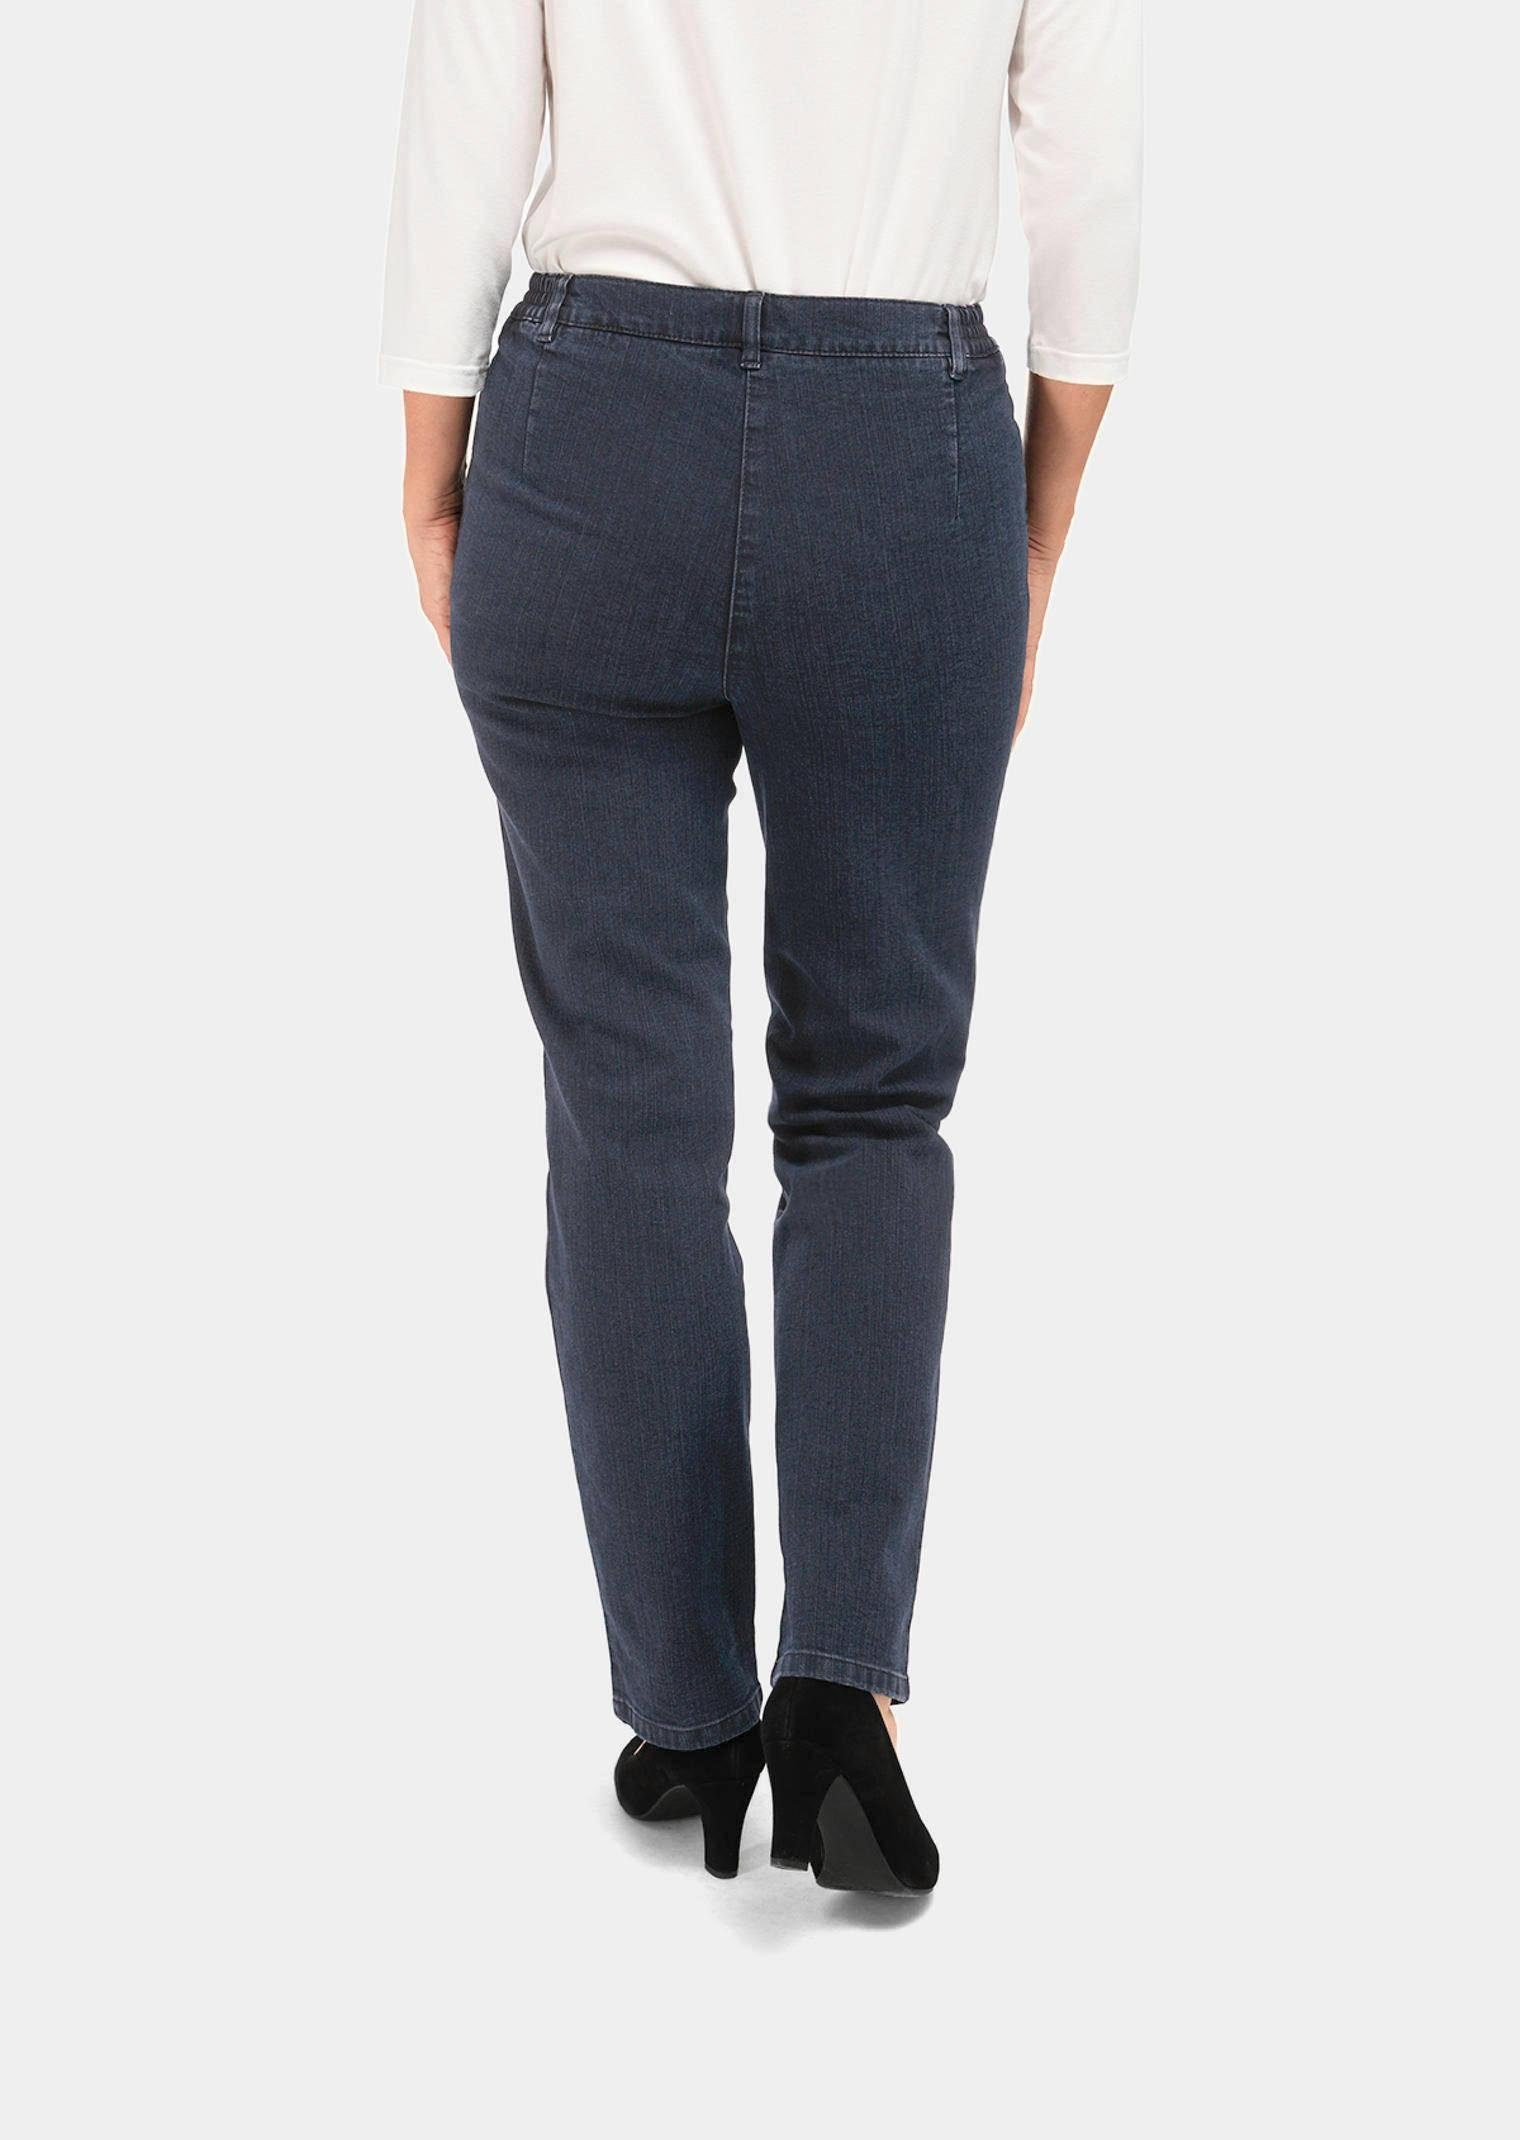 GOLDNER Bequeme Jeans Kurzgröße: Schlichte Jeanshose dunkelblau ANNA